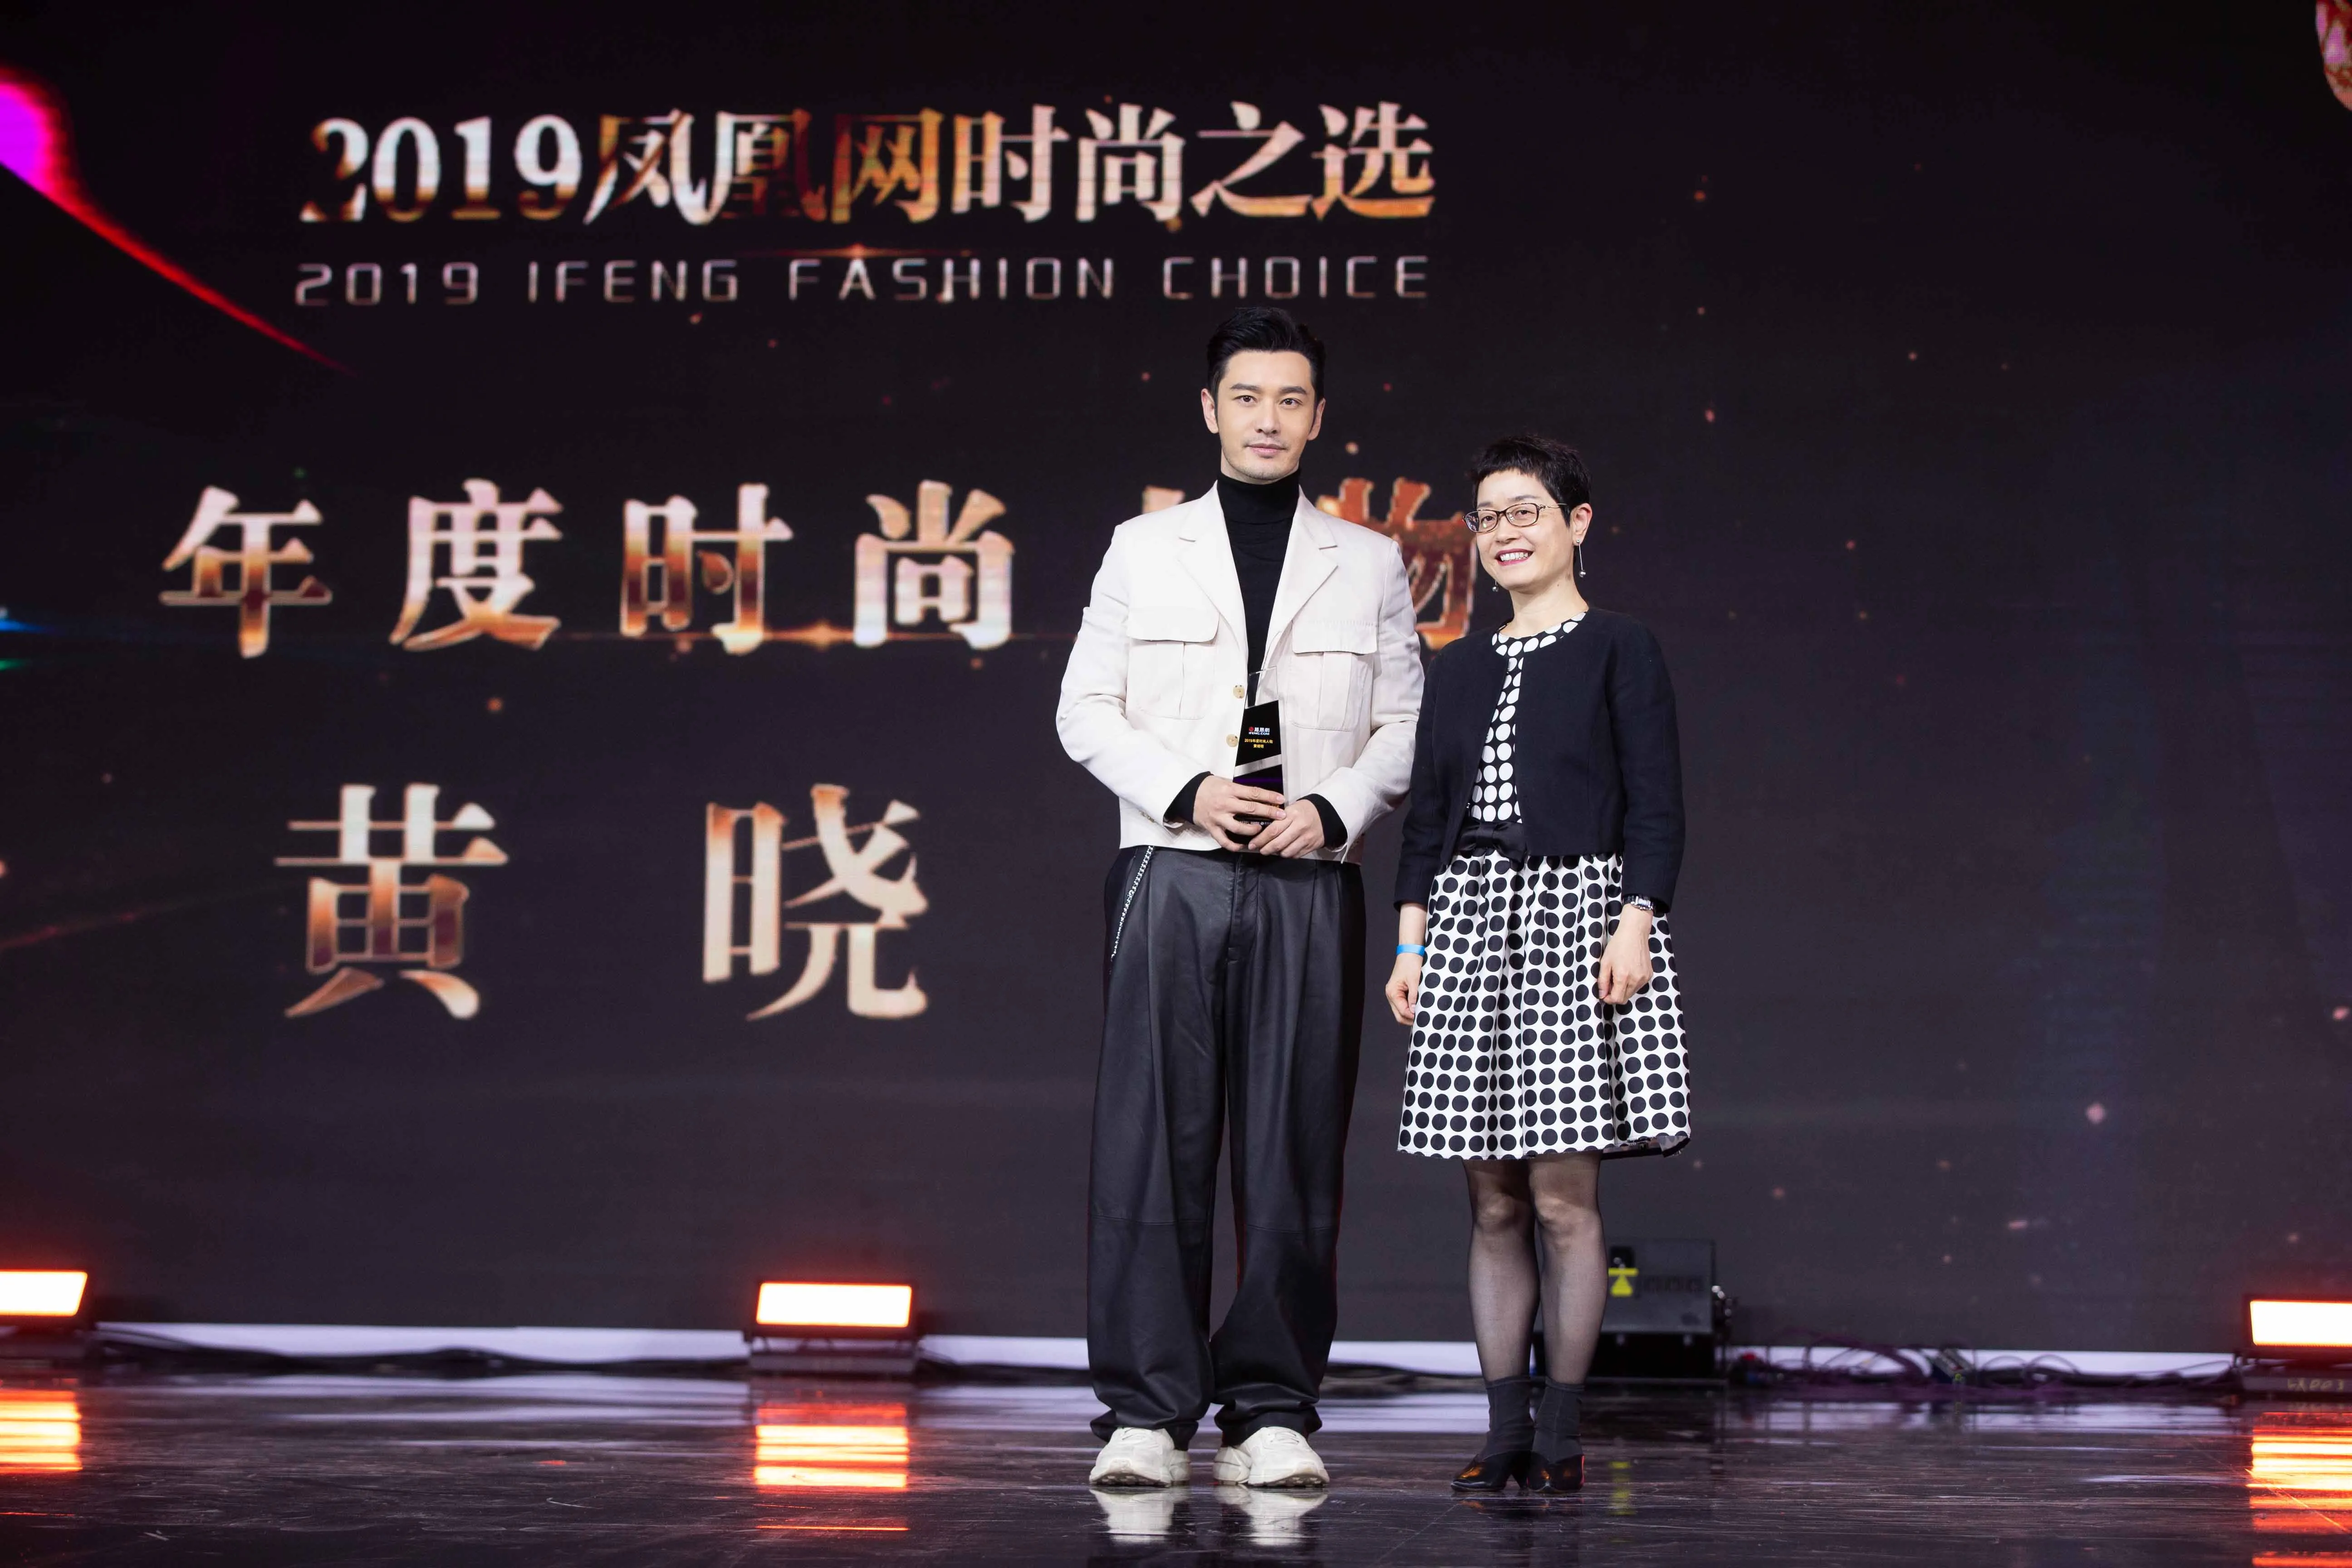 黃曉明被授予2019鳳凰時尚之選年度人物榮譽.jpg